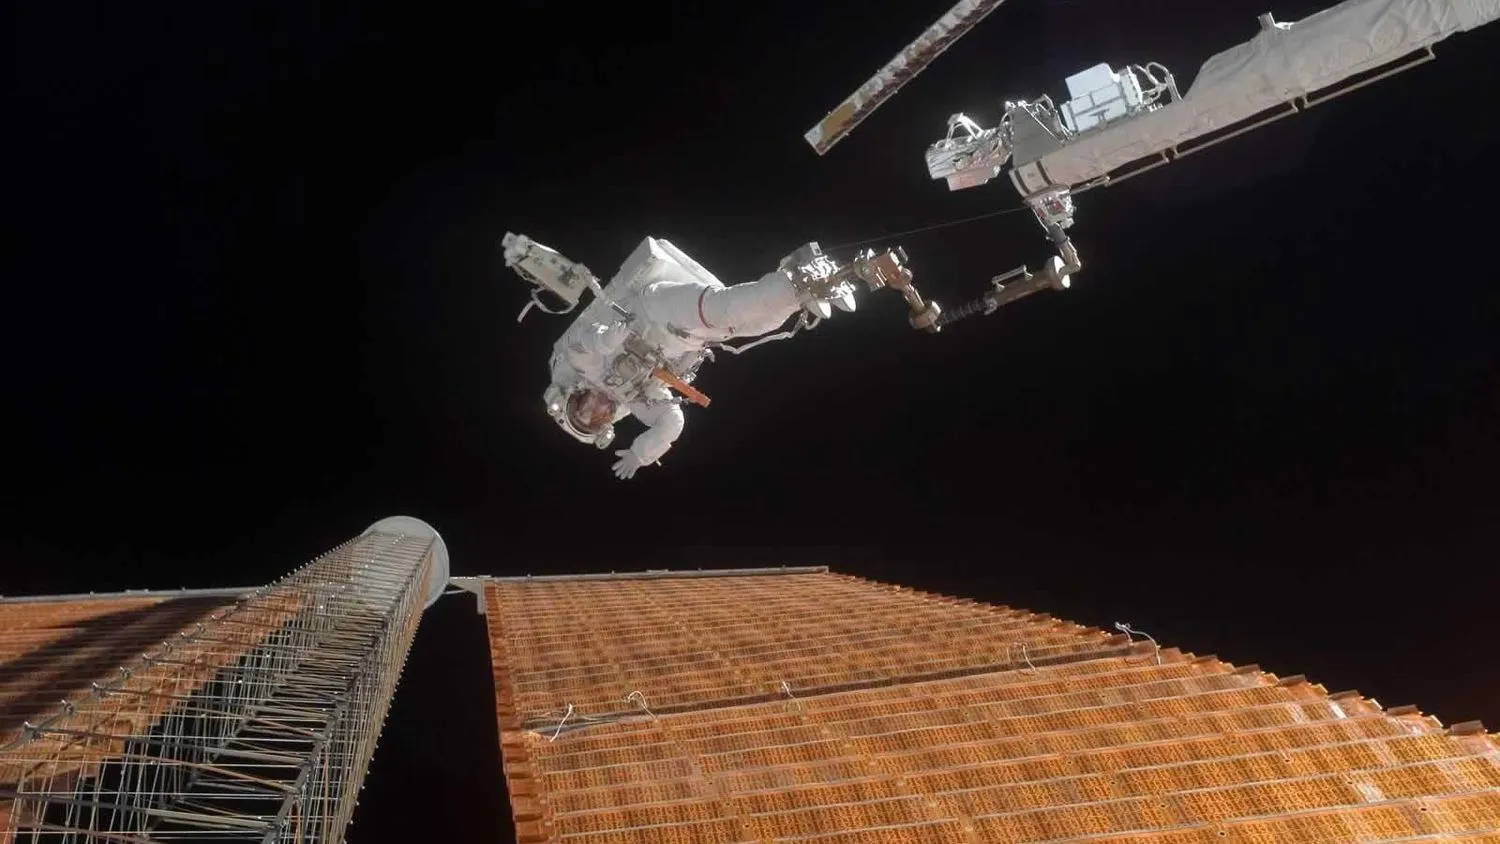 ein Astronaut auf einem Roboterarm neben einem Solarpanel im Weltraum